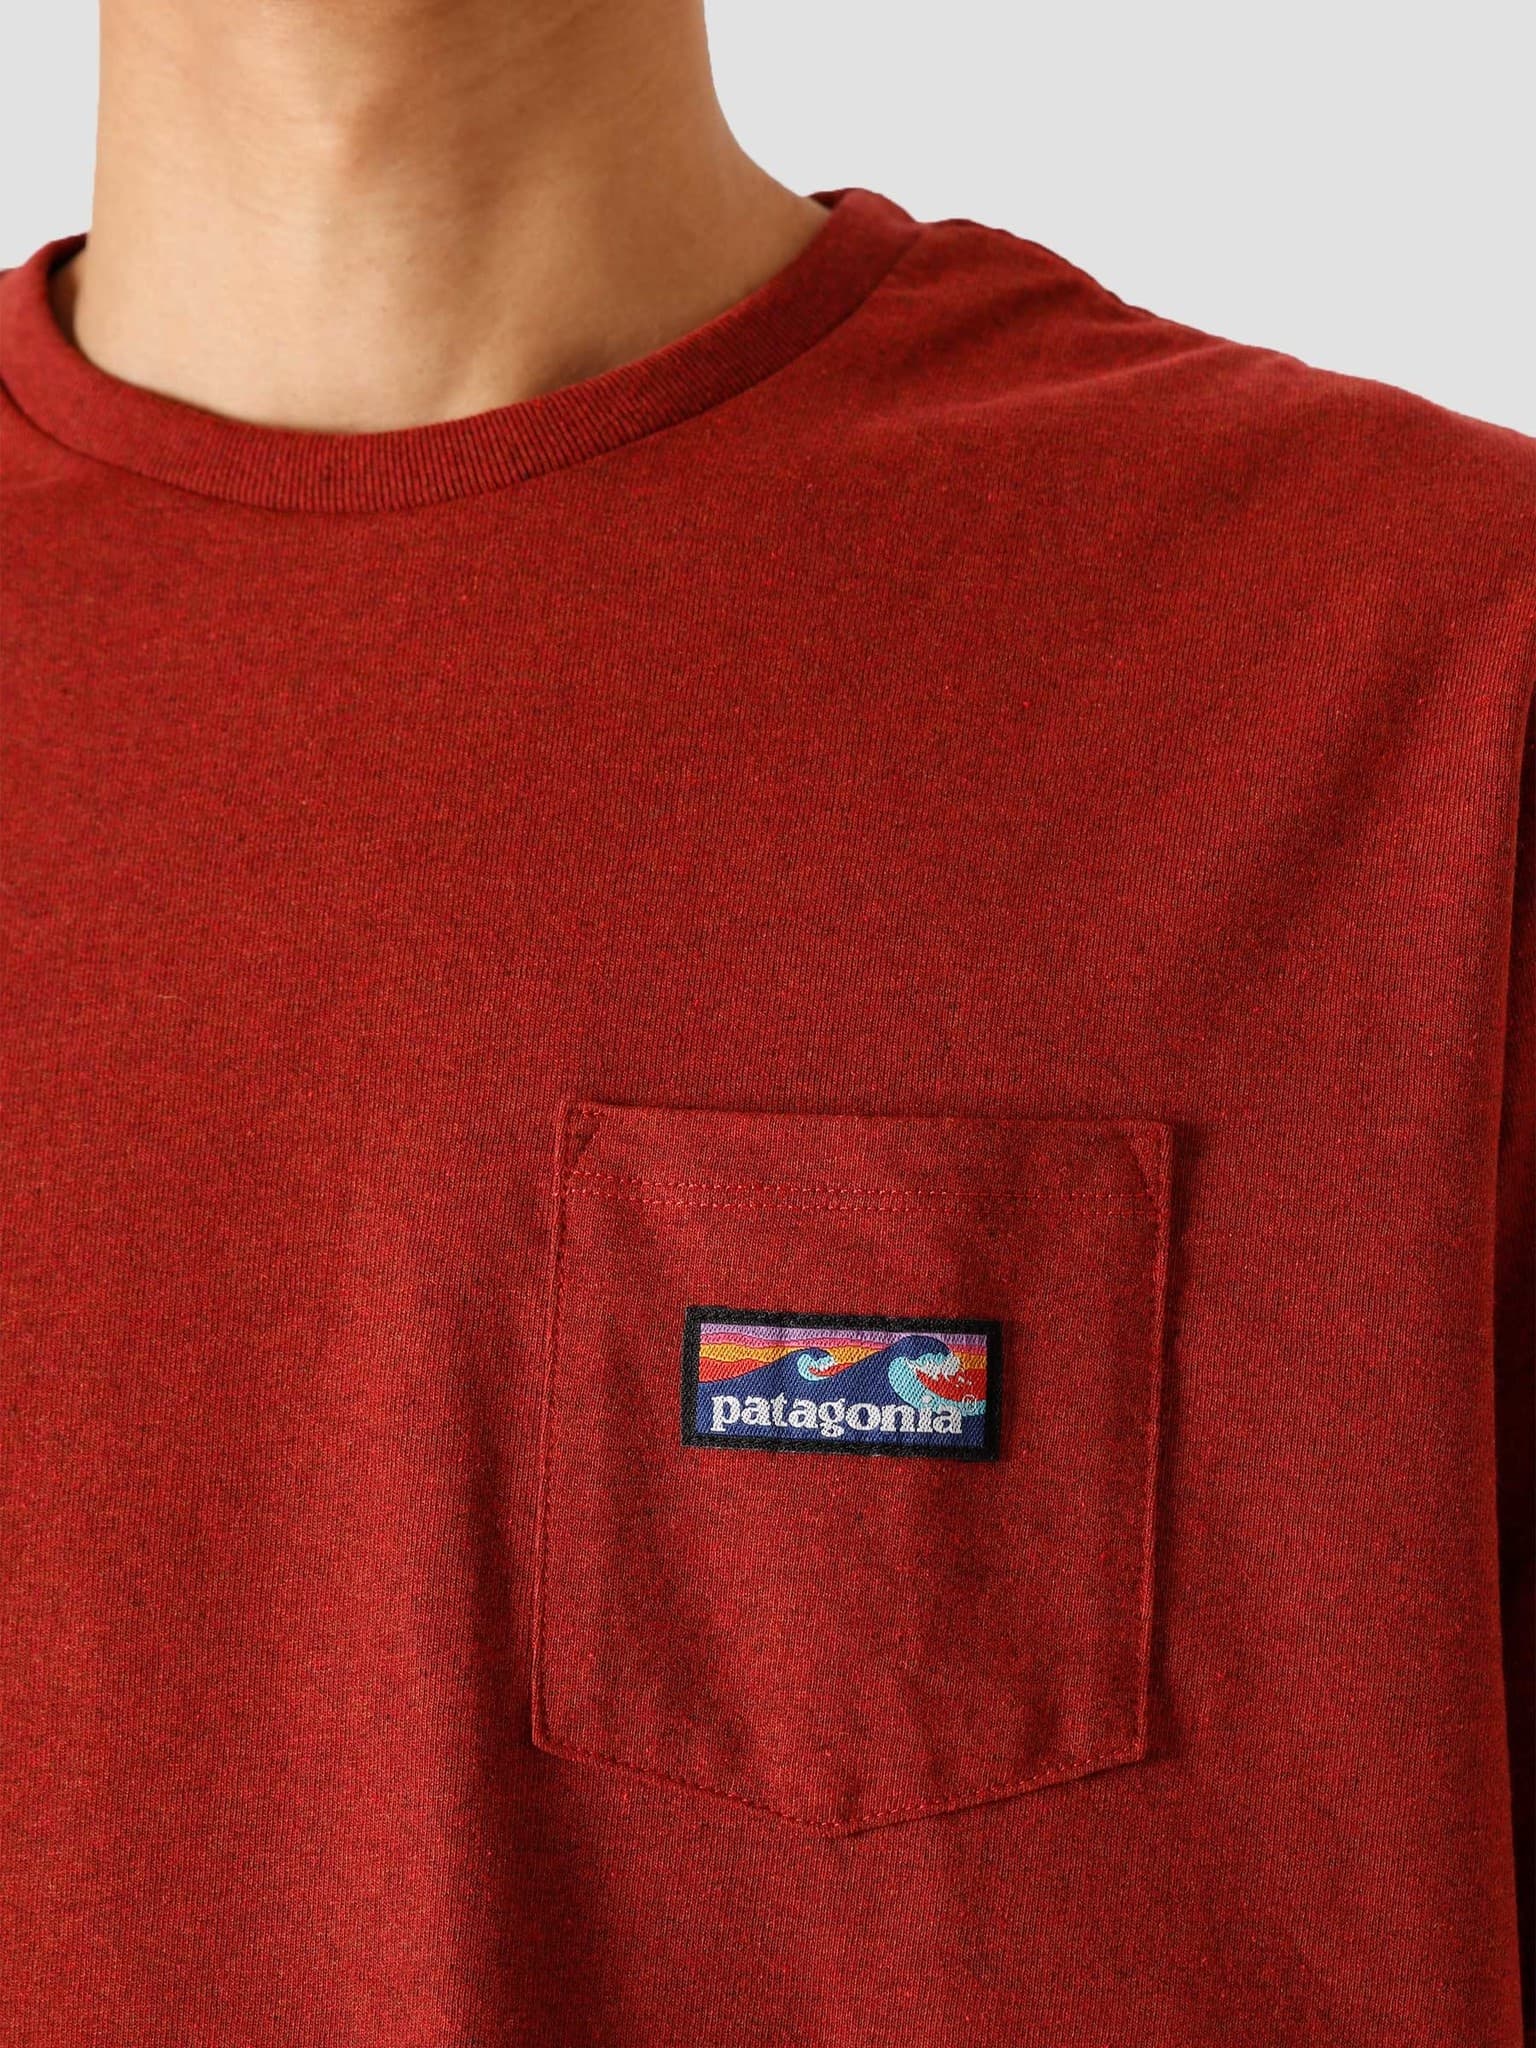 M's Boardshort Label Pocket Responsibili T-Shirt Barn Red 38510